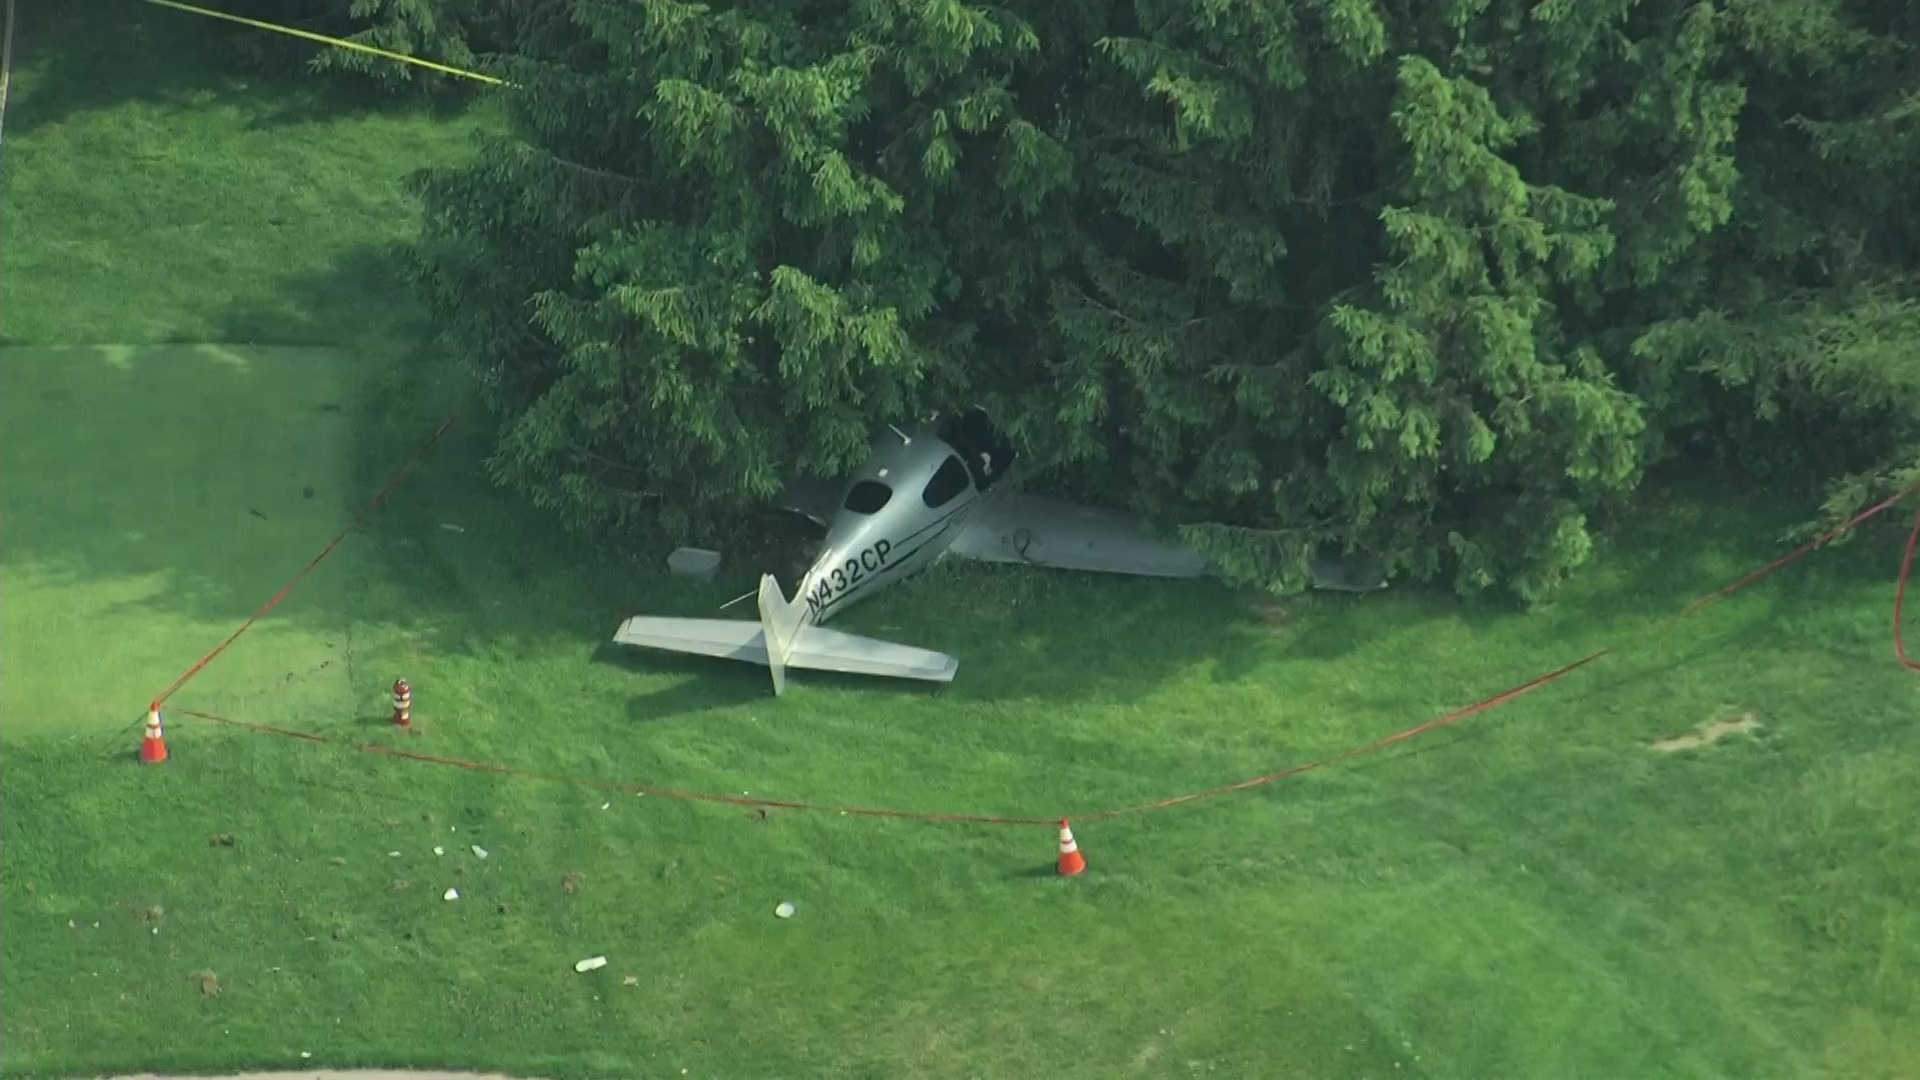 Pilot, Istri Menderita Patah Tulang, Tulang Rusuk Retak Saat Mendarat di Lapangan Golf Wayne Tapi Merasa Beruntung Masih Hidup – CBS Philly